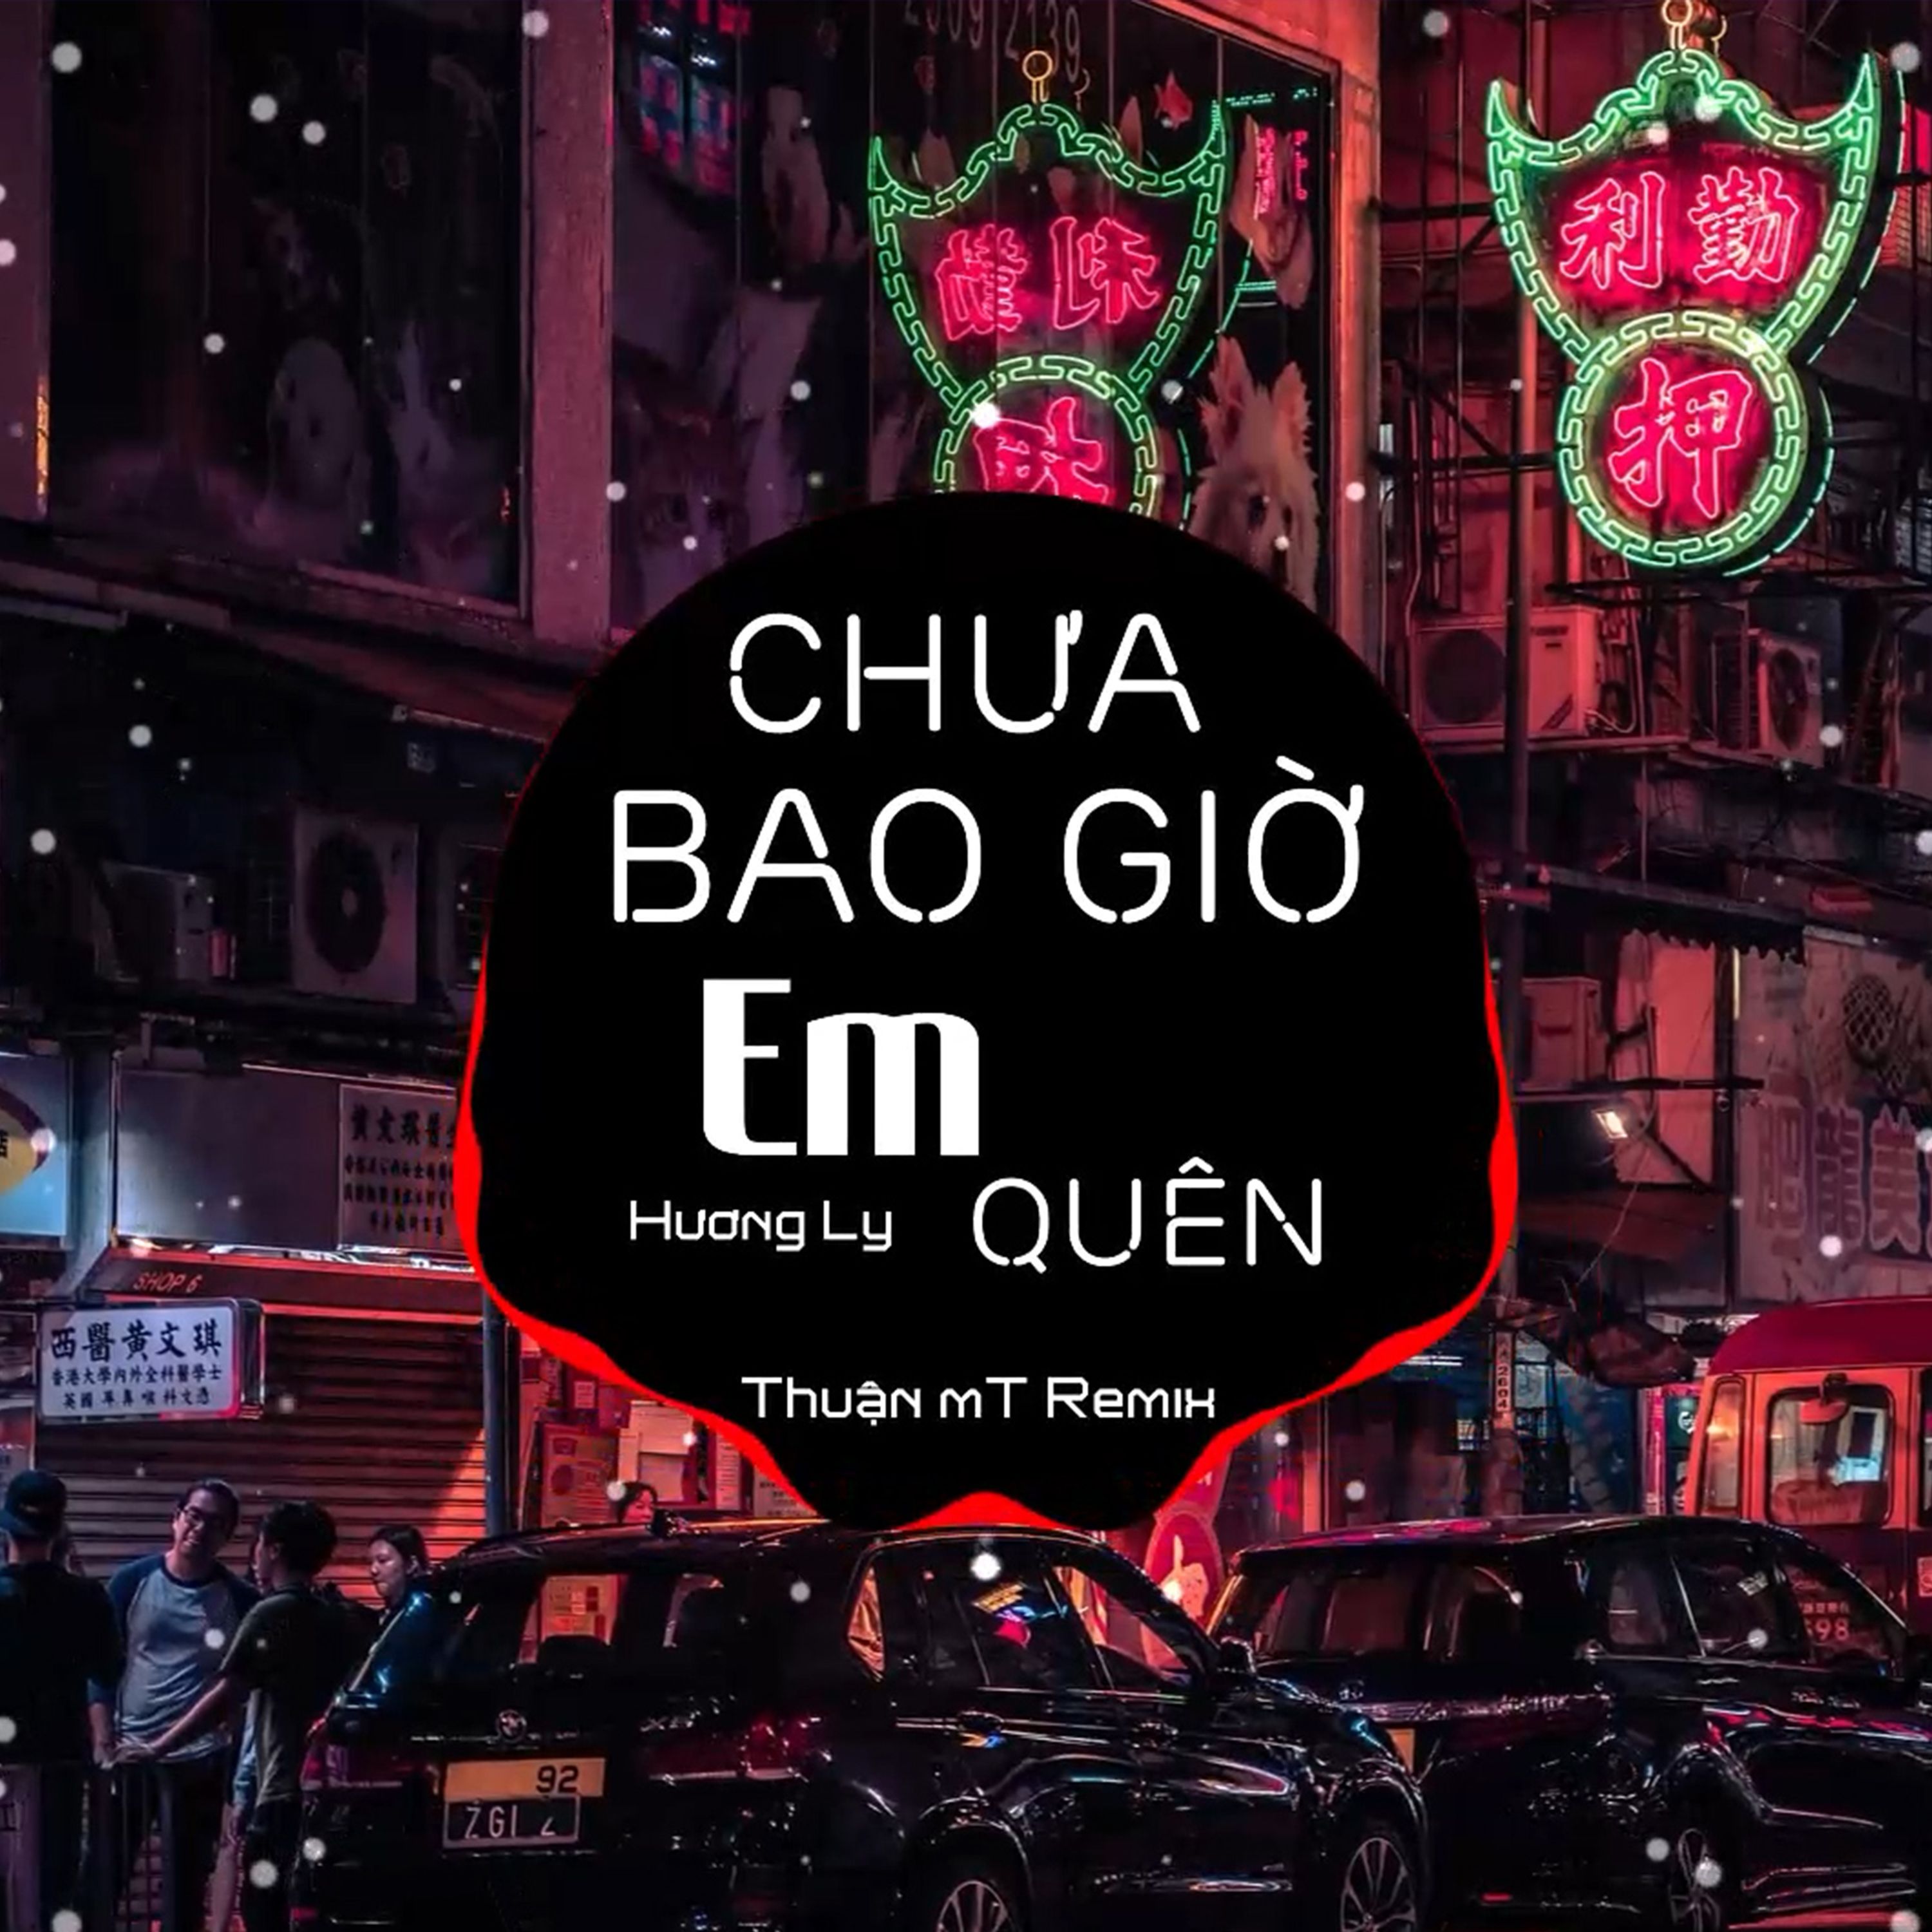 ဒေါင်းလုပ် Chưa Bao Giờ Em Quên ( Thuận mT Remix ) Ver 2 - Hương Ly | Nhạc Nền Chill Phiêu Nhất TikTok  2021